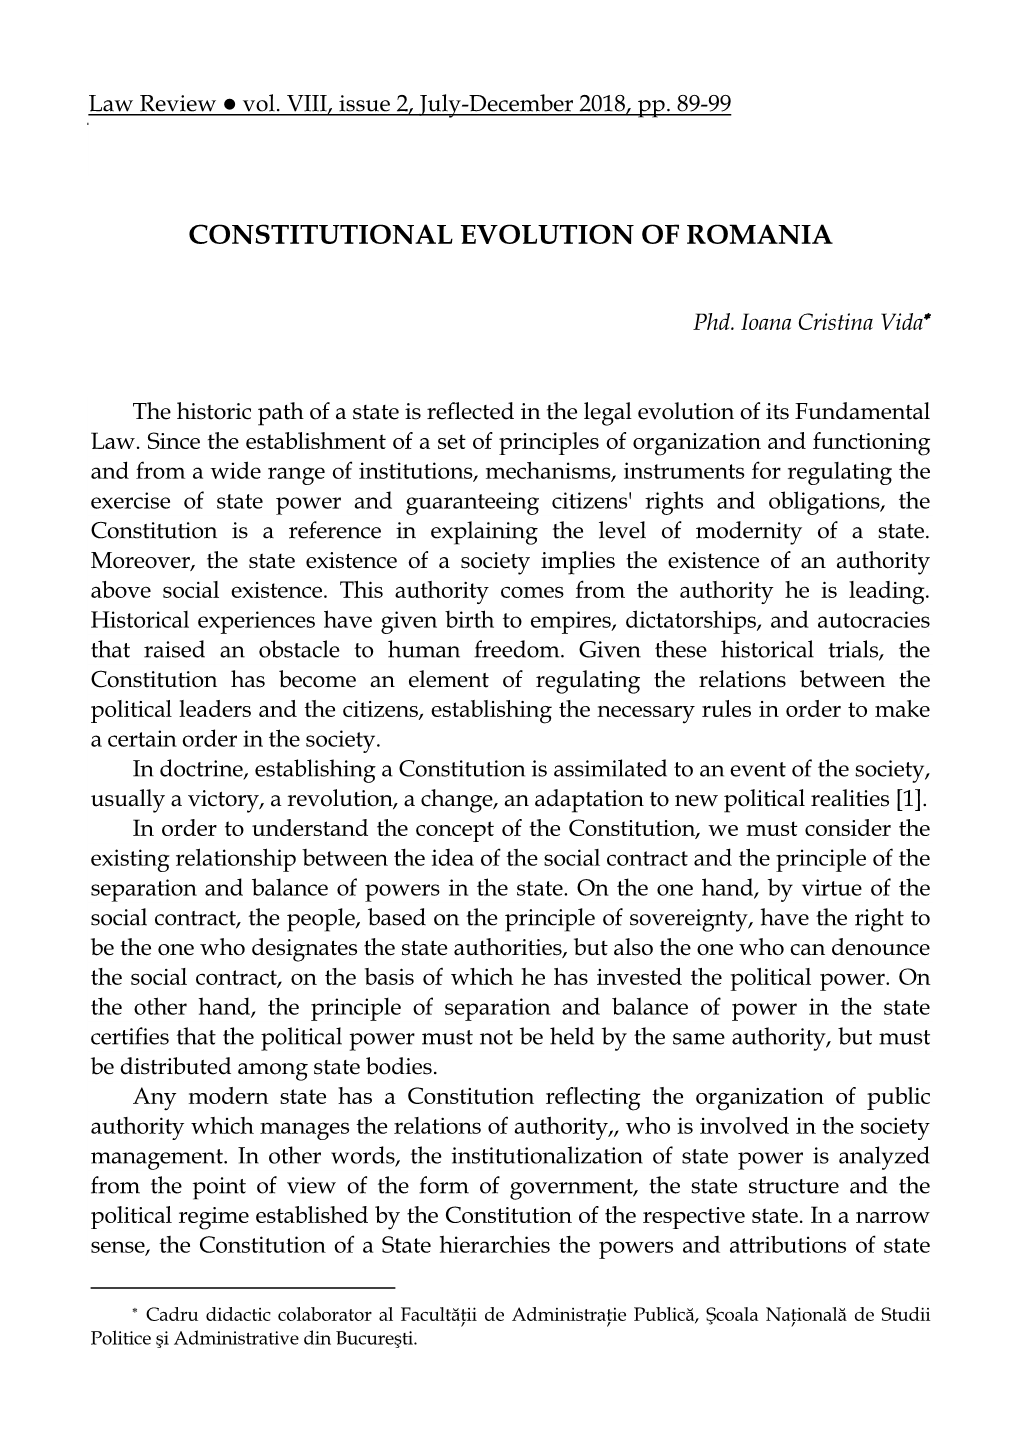 Constitutional Evolution of Romania